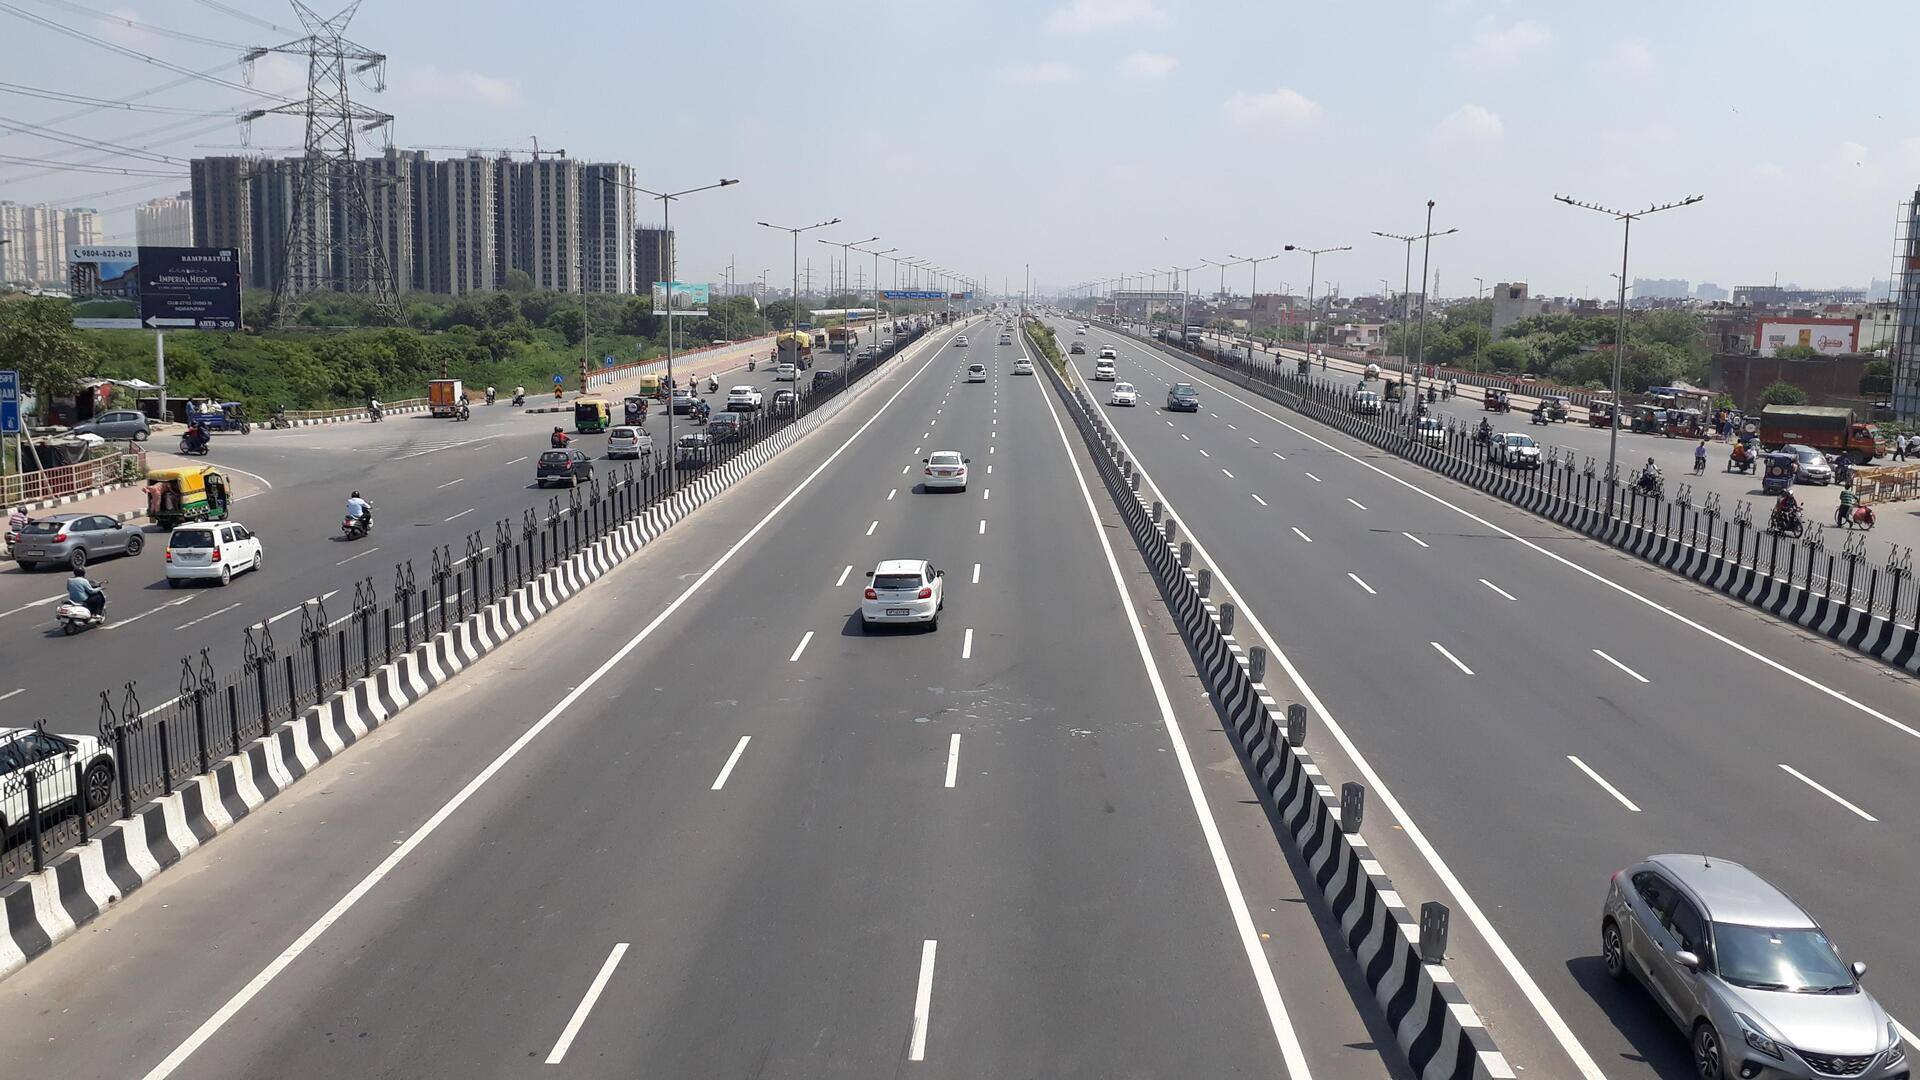 दिल्ली-मेरठ एक्सप्रेसवे पर रील बनाने के लिए स्टंटबाजों ने ब्लॉक किया राजमार्ग, सामने आया वीडियो